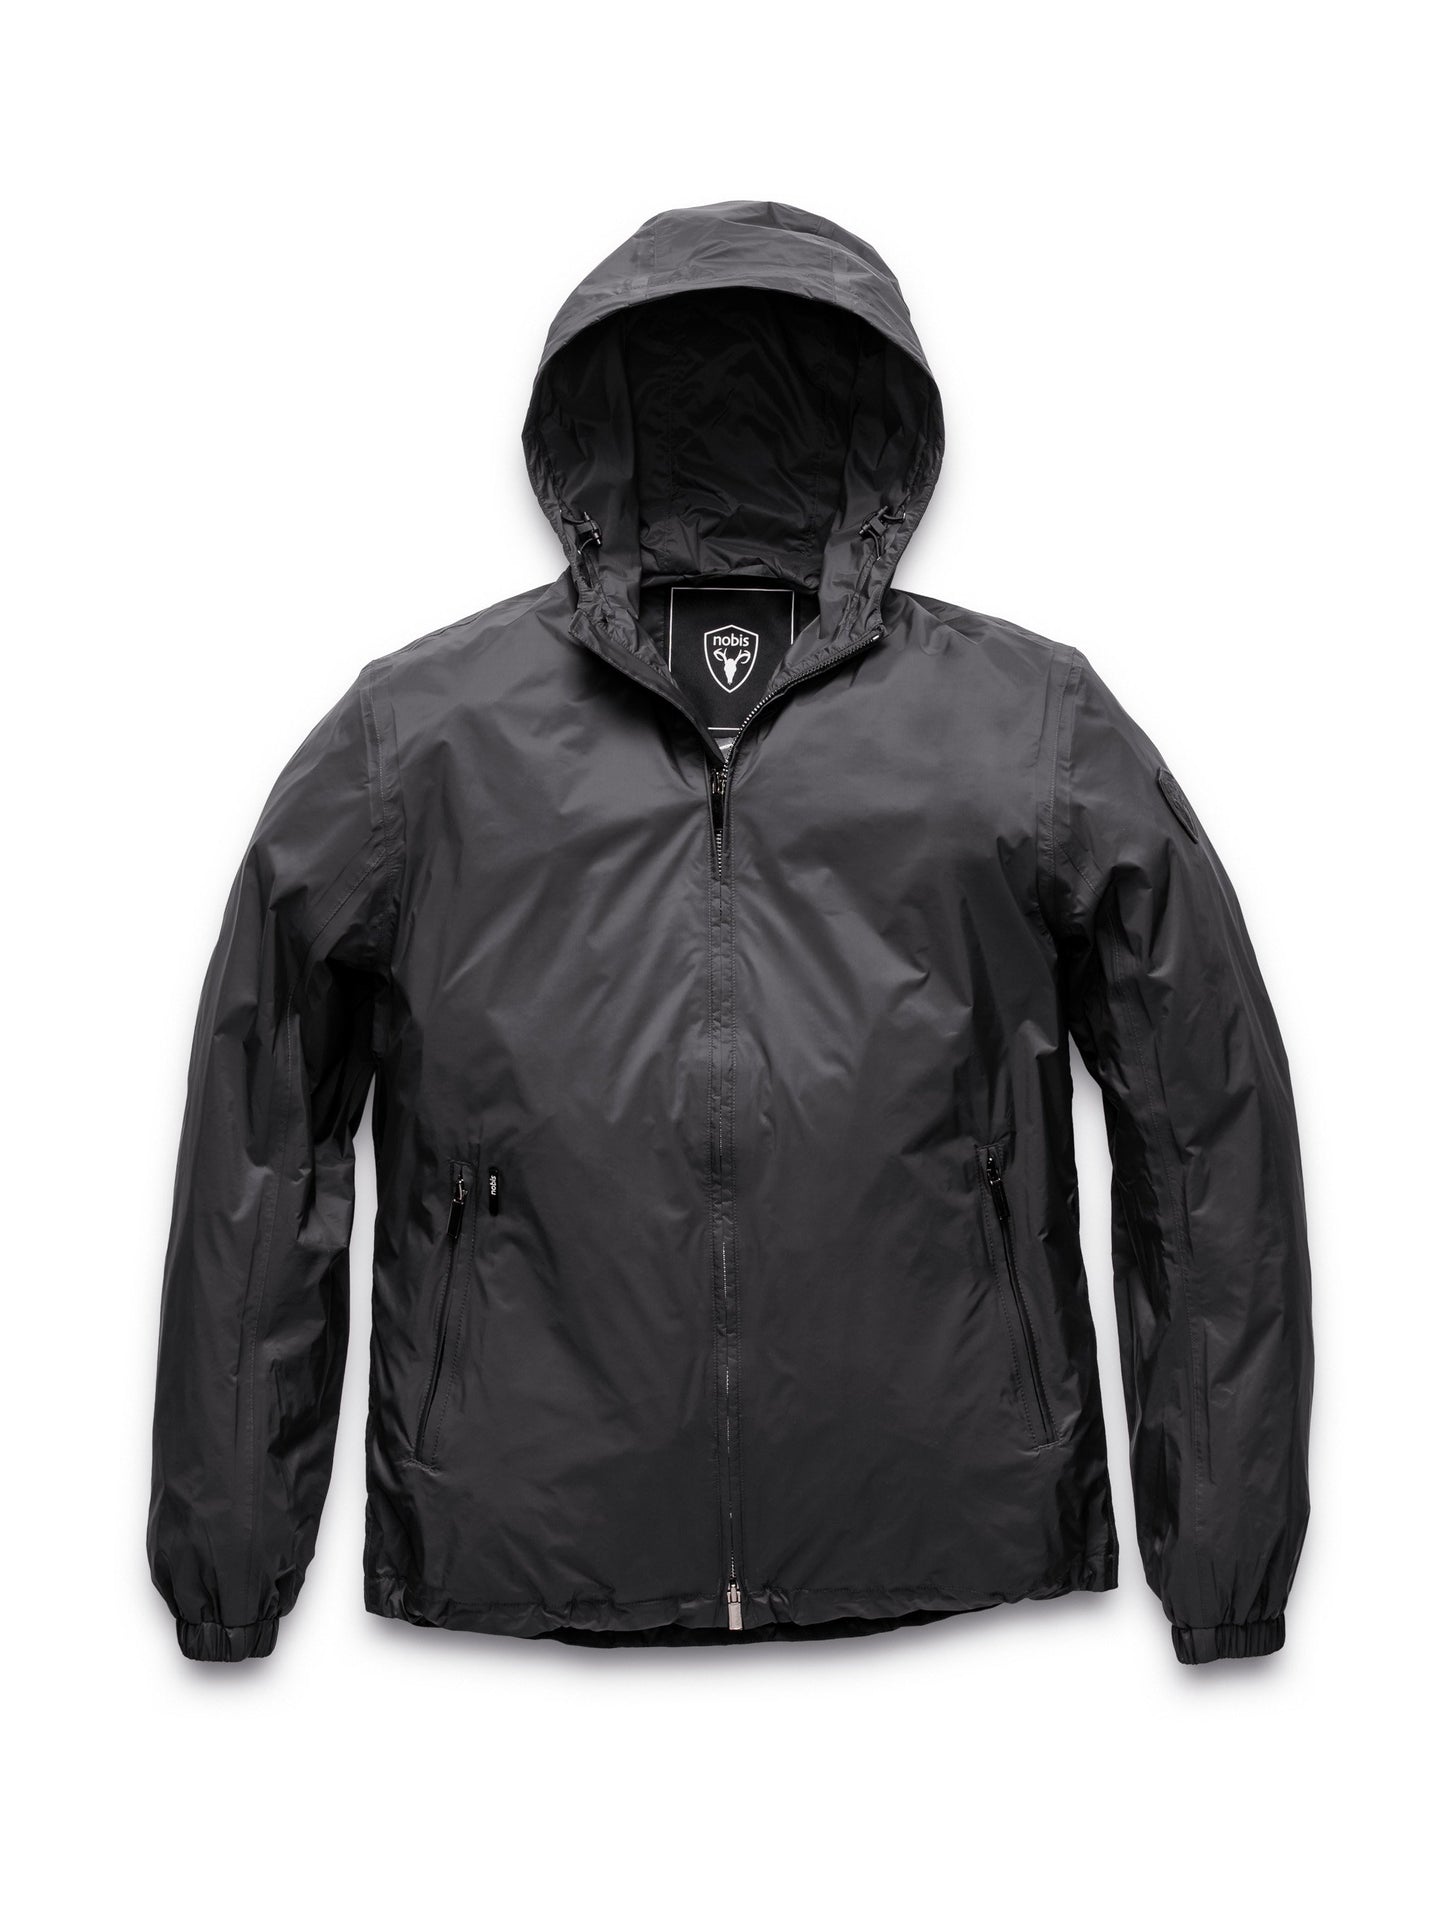 Men's waist length zip up hooded windproof jacket in Black